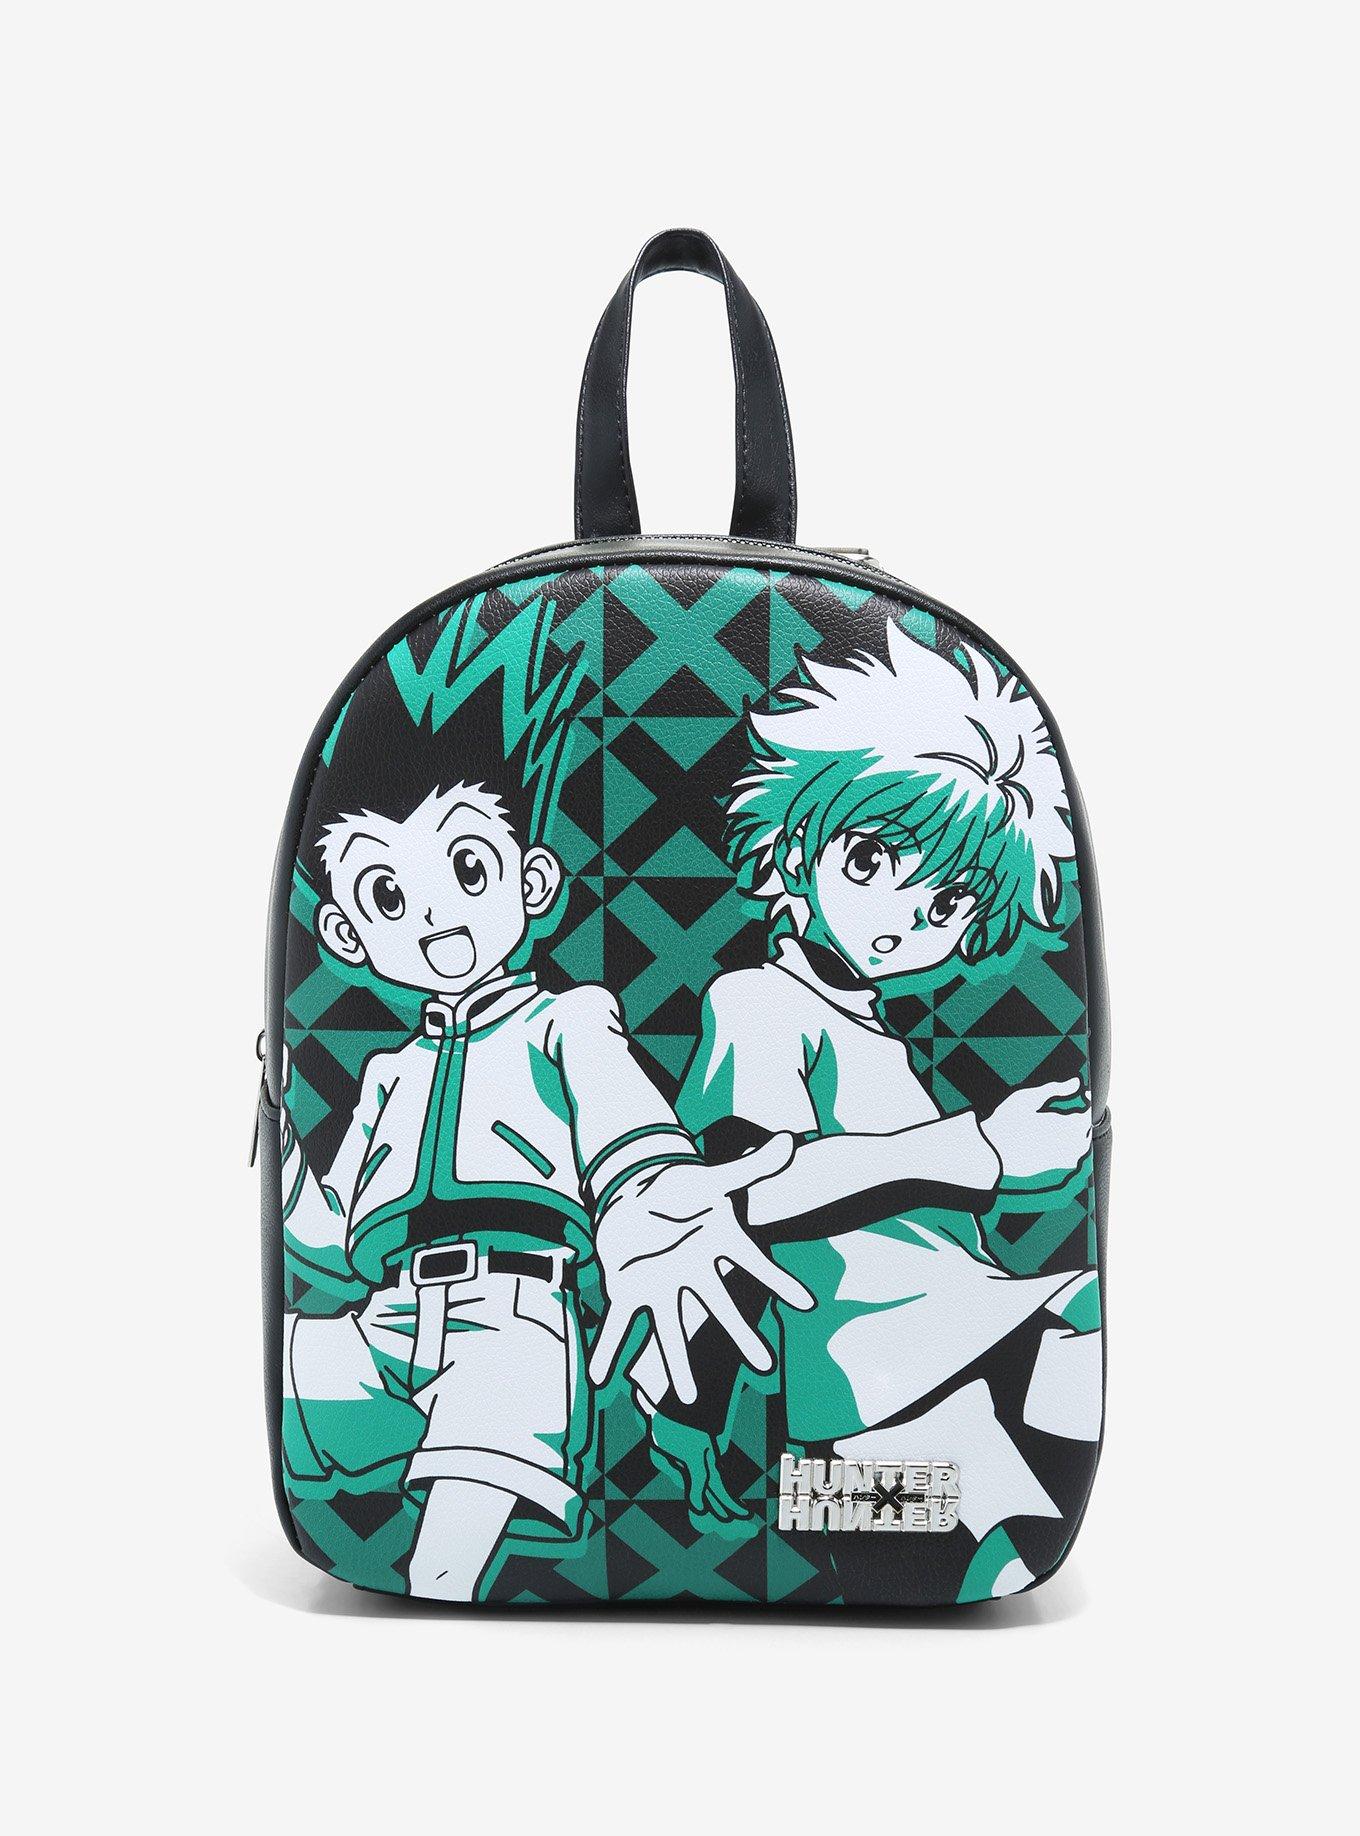 Hunter X Hunter Killua & Gon Mini Backpack, , hi-res